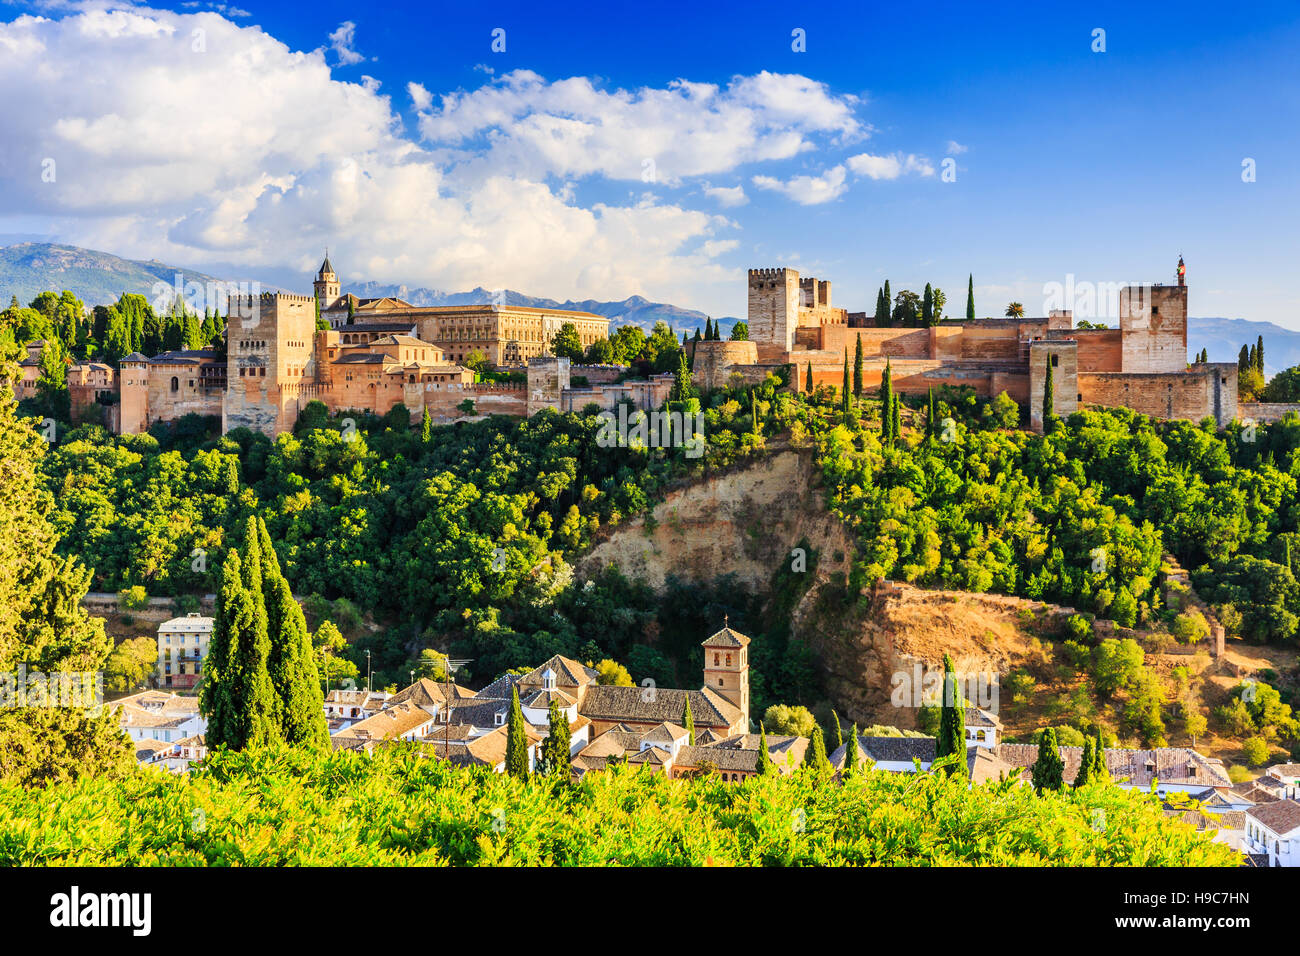 Alhambra von Granada, Spanien. Festung Alhambra und Albaicin am späten Nachmittag. Stockfoto